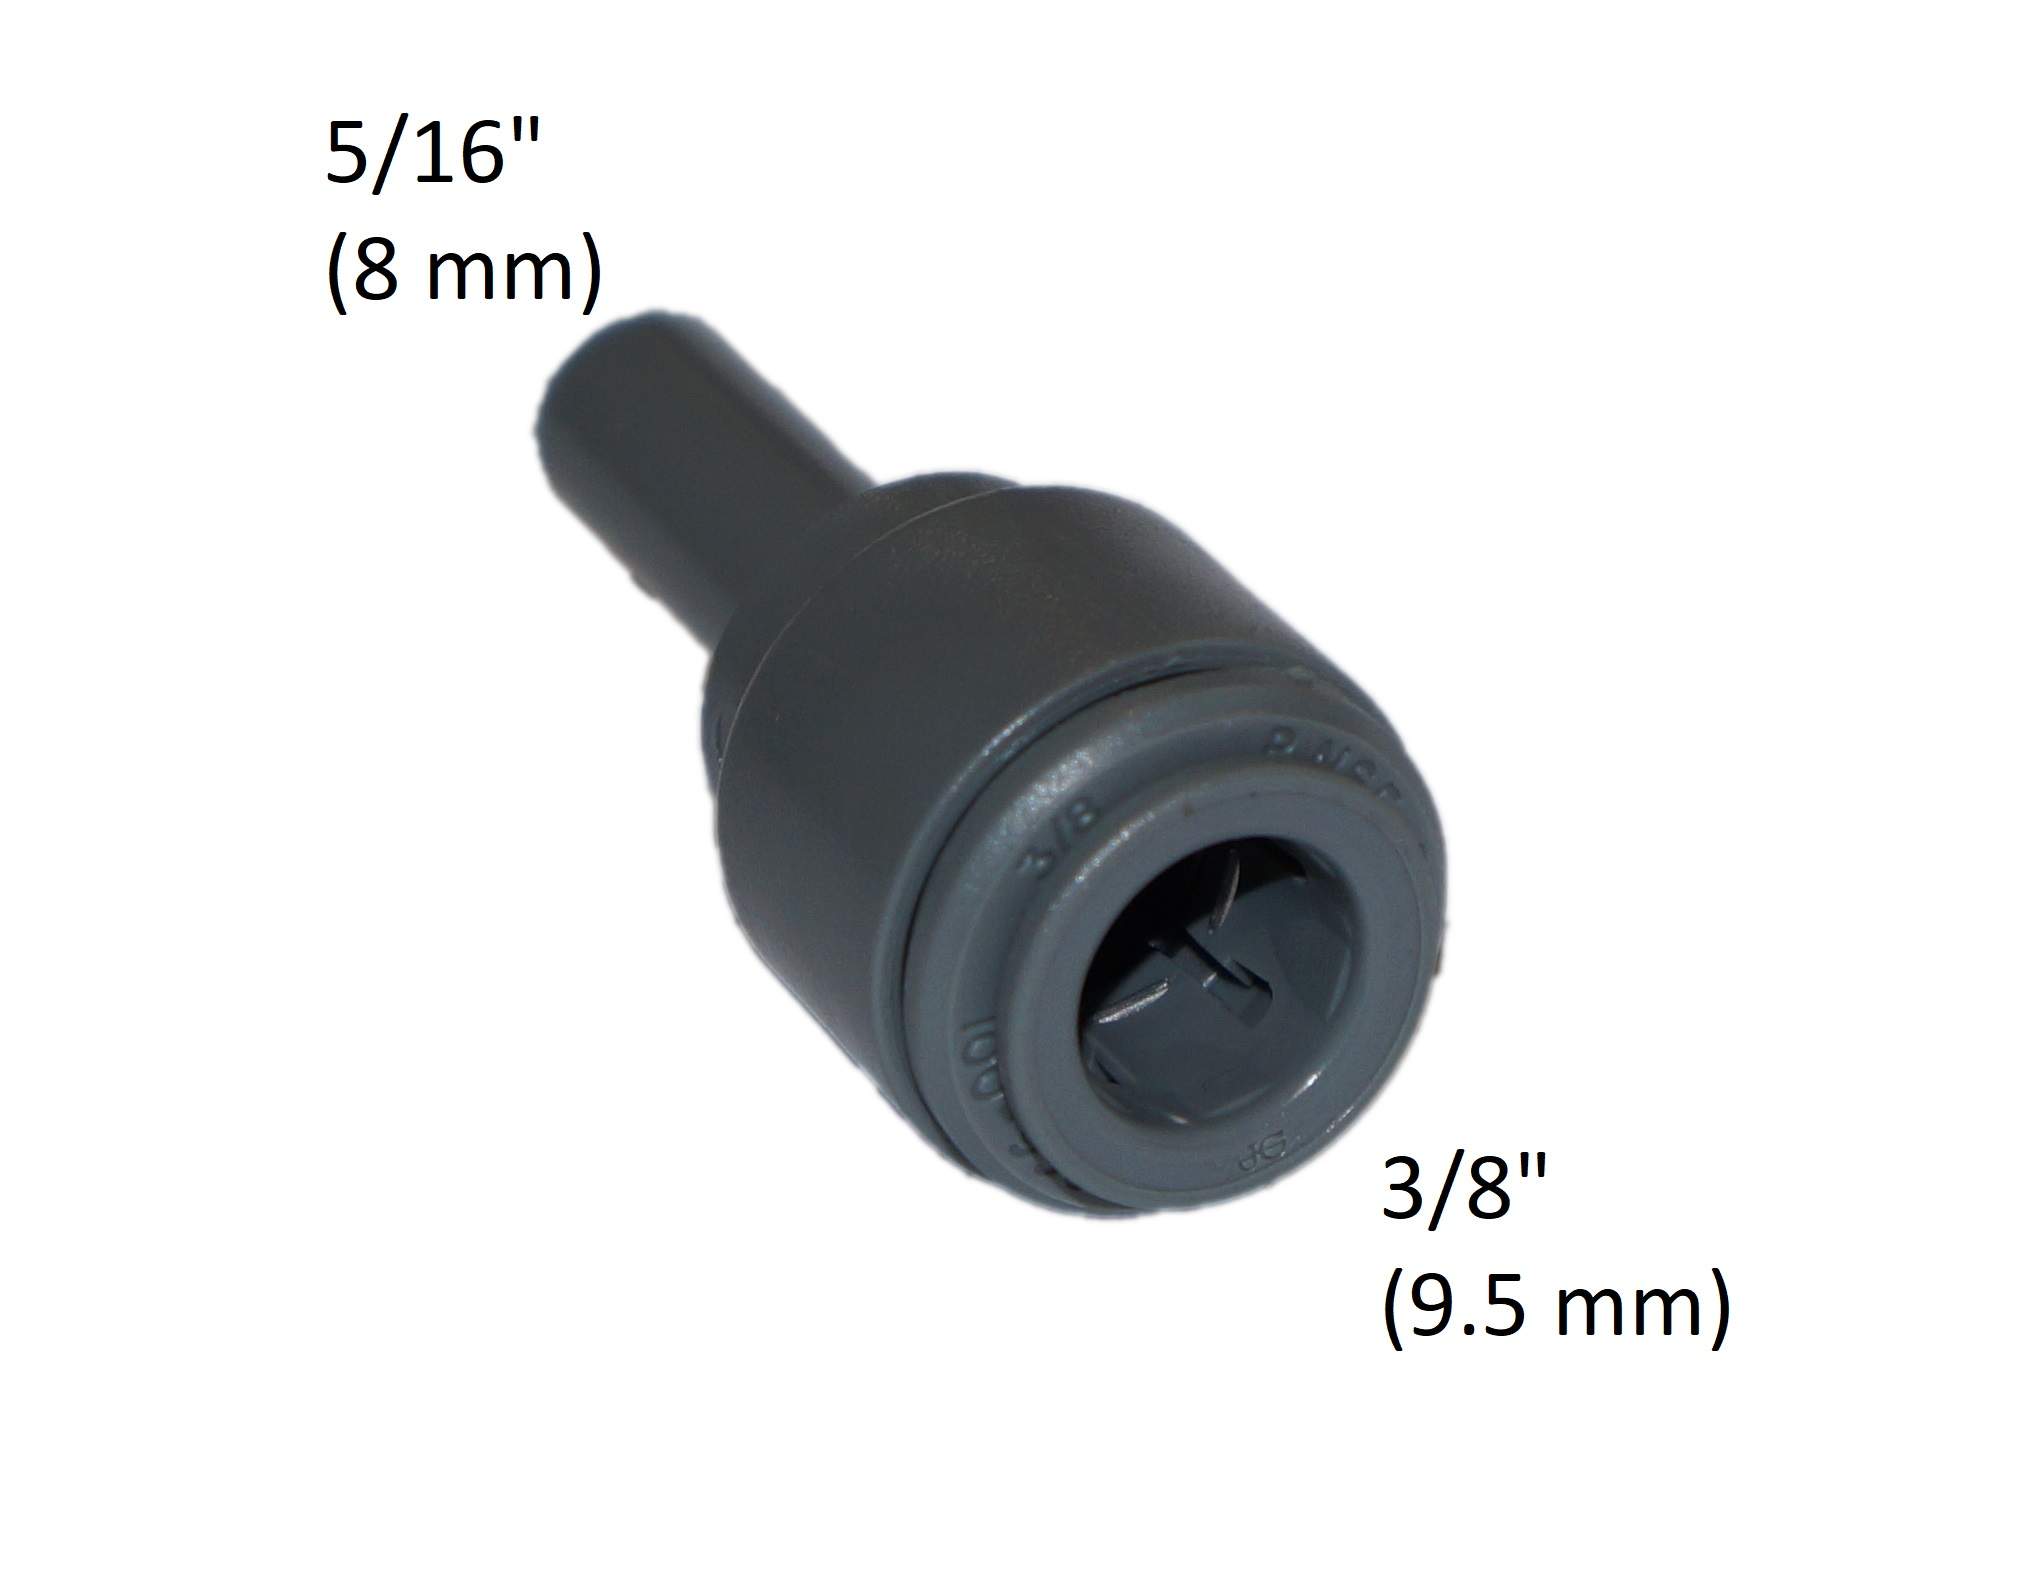 Accoppiamento per tubo da 3/8" (9,5 mm) a presa 5/16" (8mm)